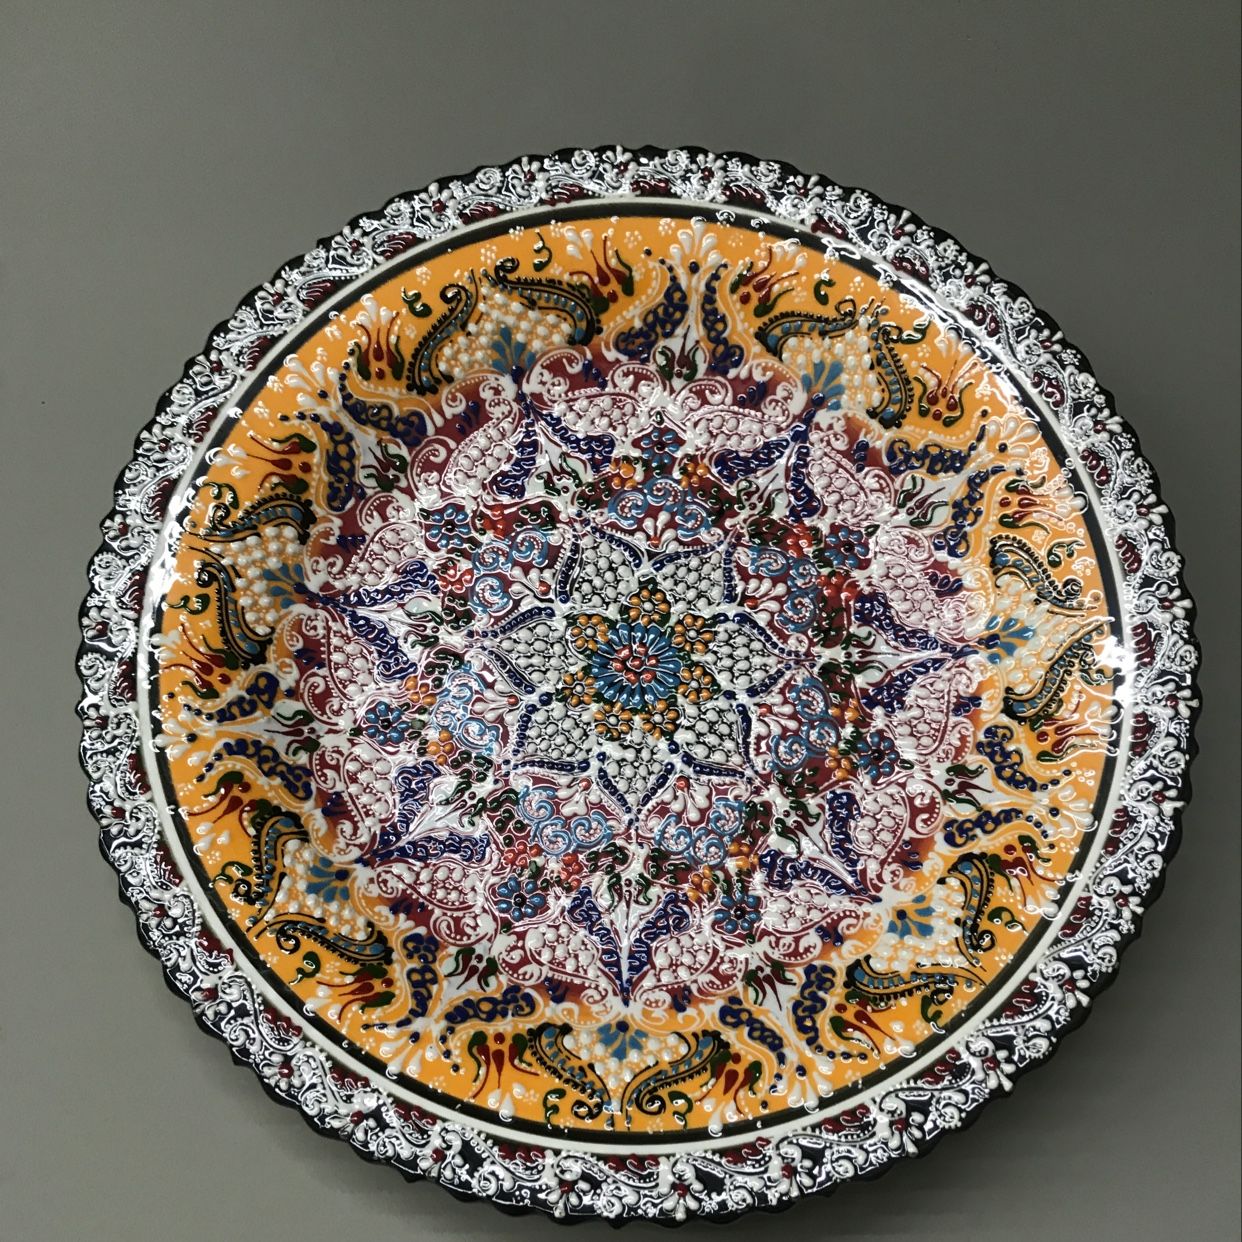 土耳其手绘陶瓷花盘子陶瓷杯咖啡杯茶杯款式多花语1